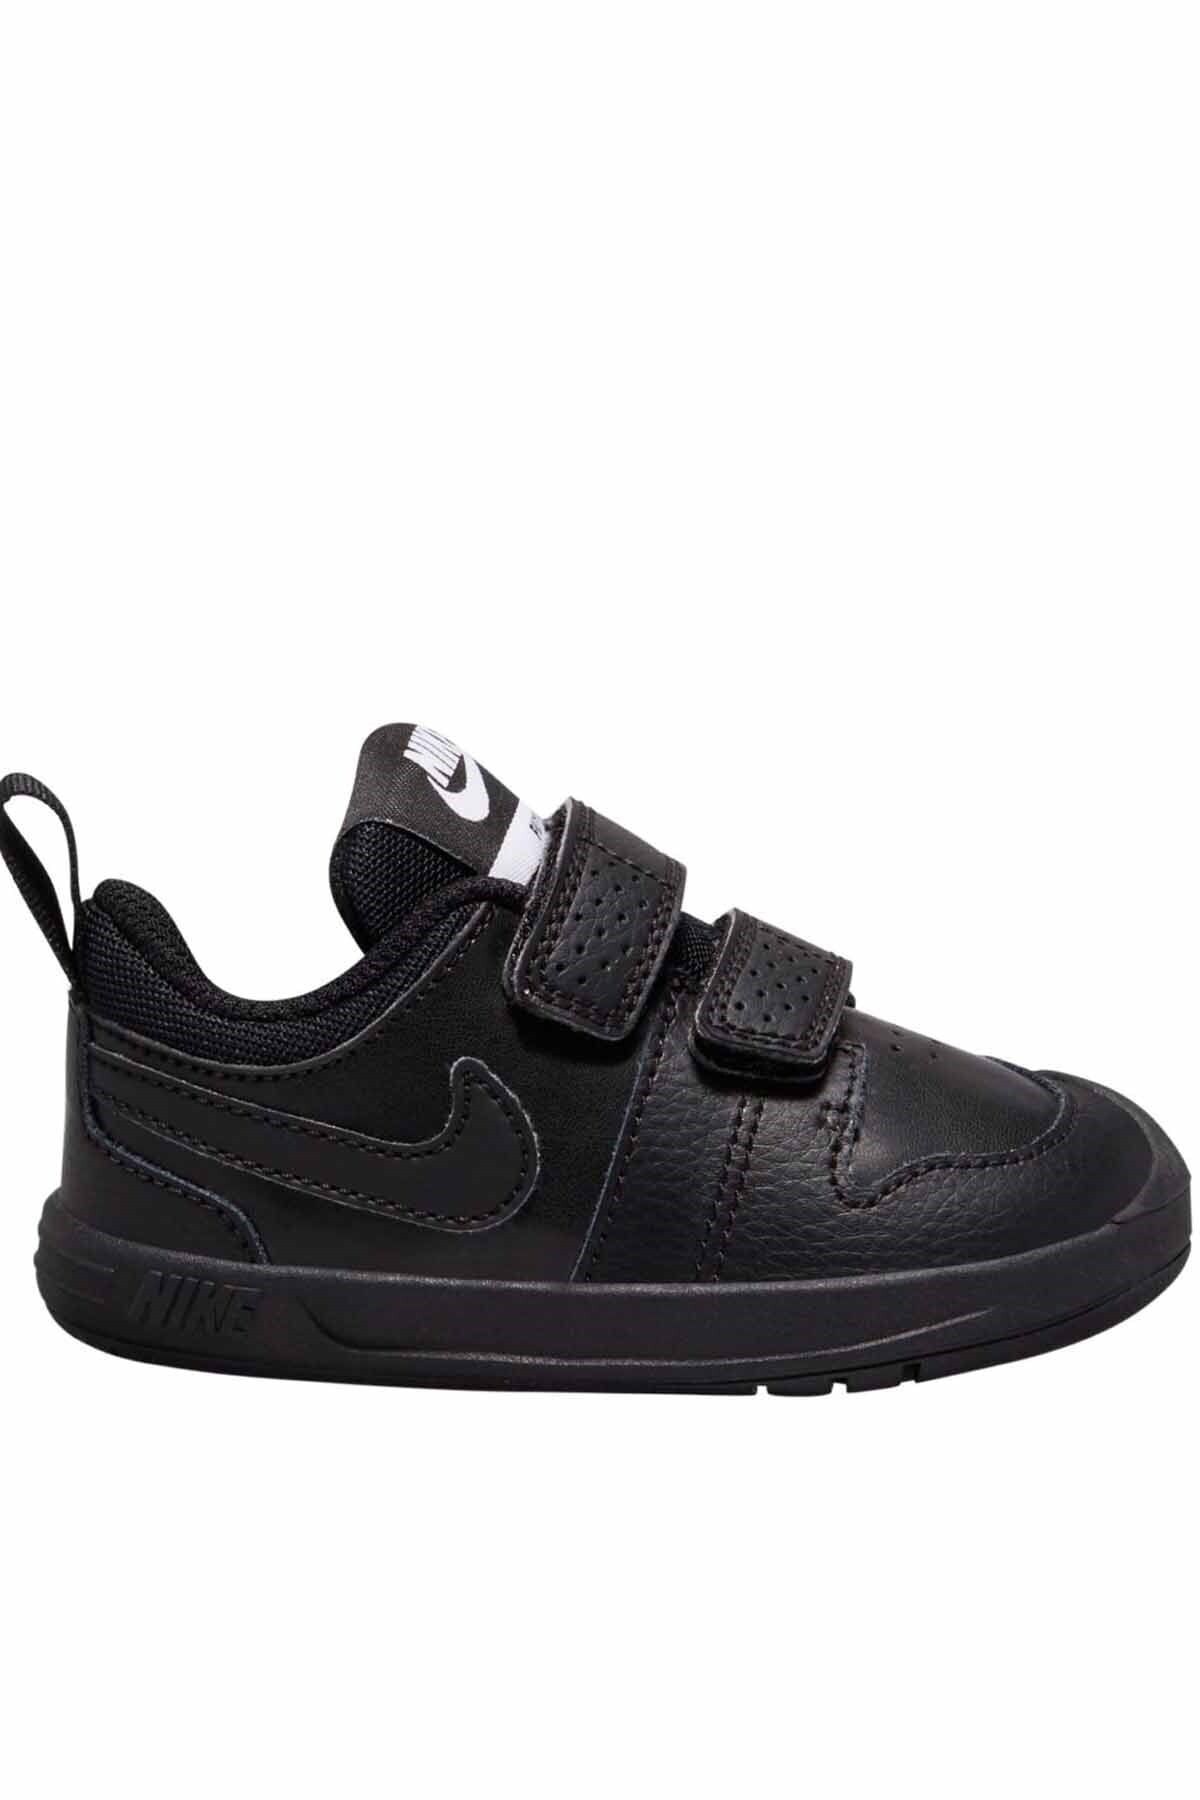 Nike Unisex Çocuk Siyah Günlük Spor Ayakkabı Ar4162-001 Pıco 5 tdv